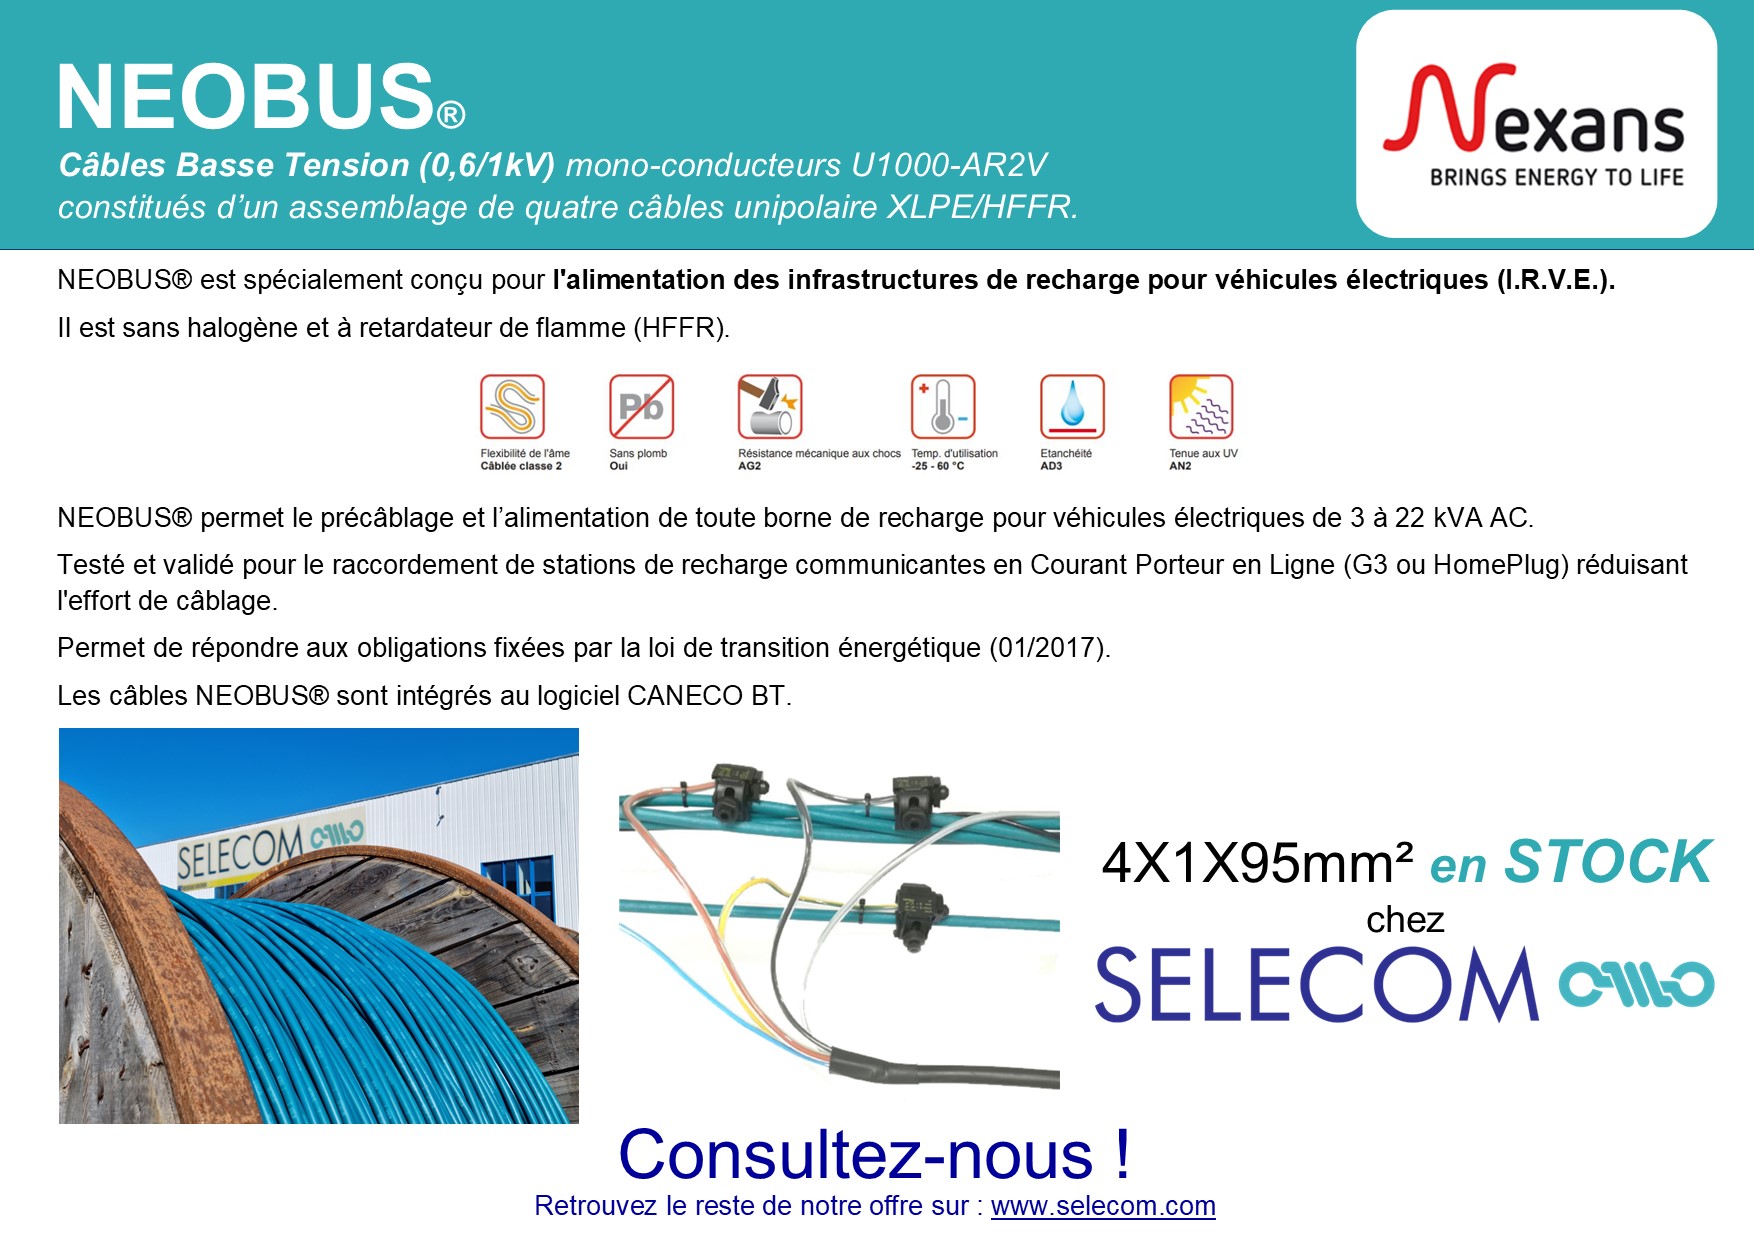 Nexans - Solutions de câblage pour IRVE